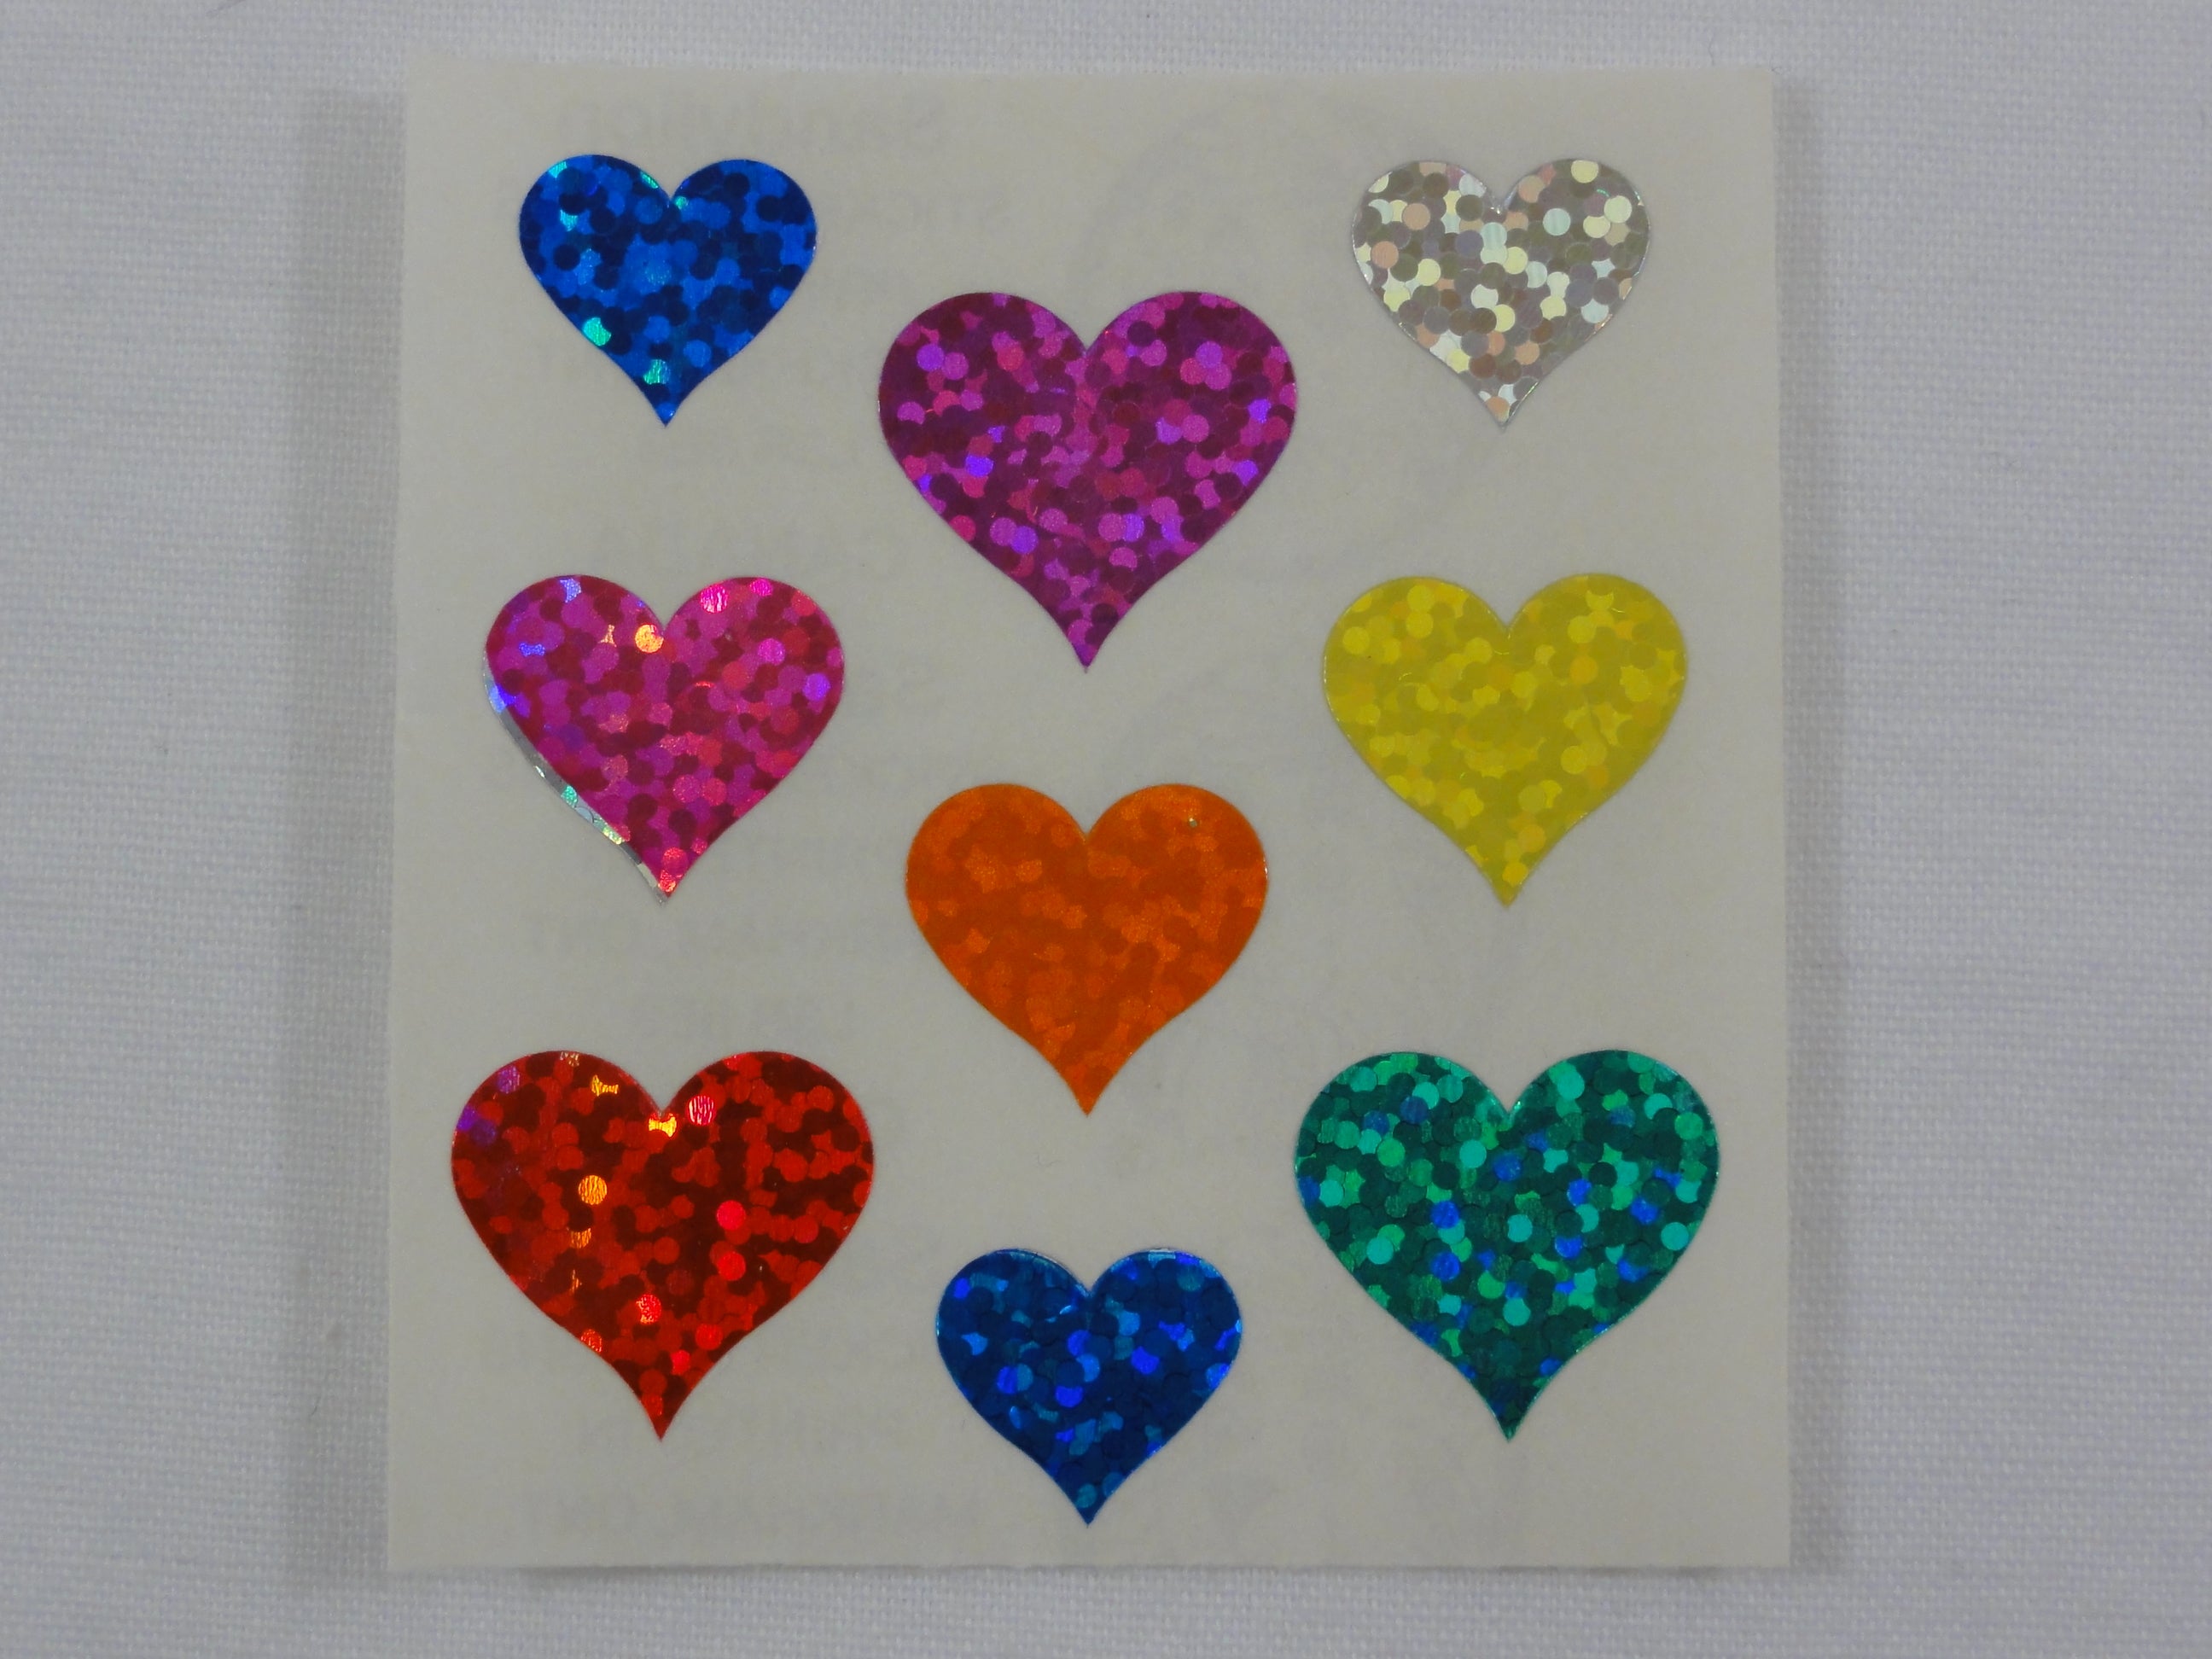 Jazzstick 1120 Small Heart Stickers Glitter Scrapbook 10 sheets